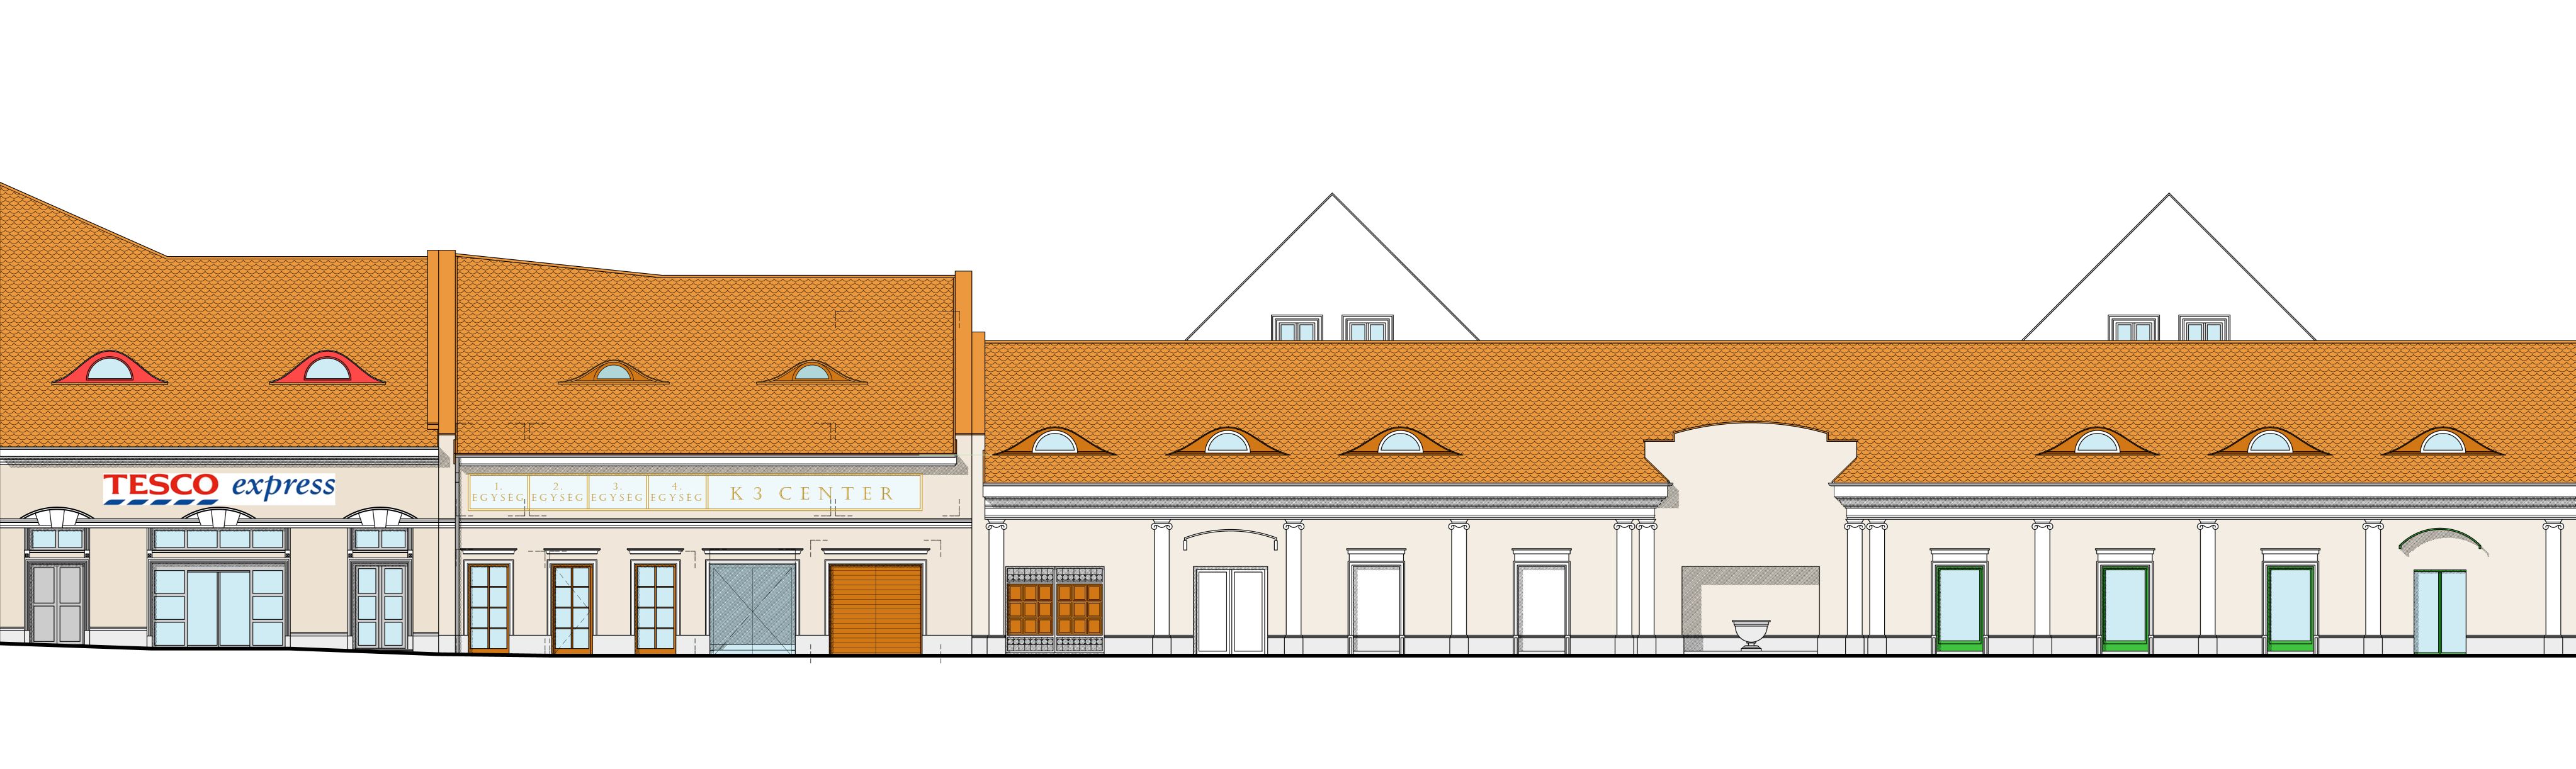 Kolosy téri homlokzat a két csatlakozó szomszédos meglévő épülettel